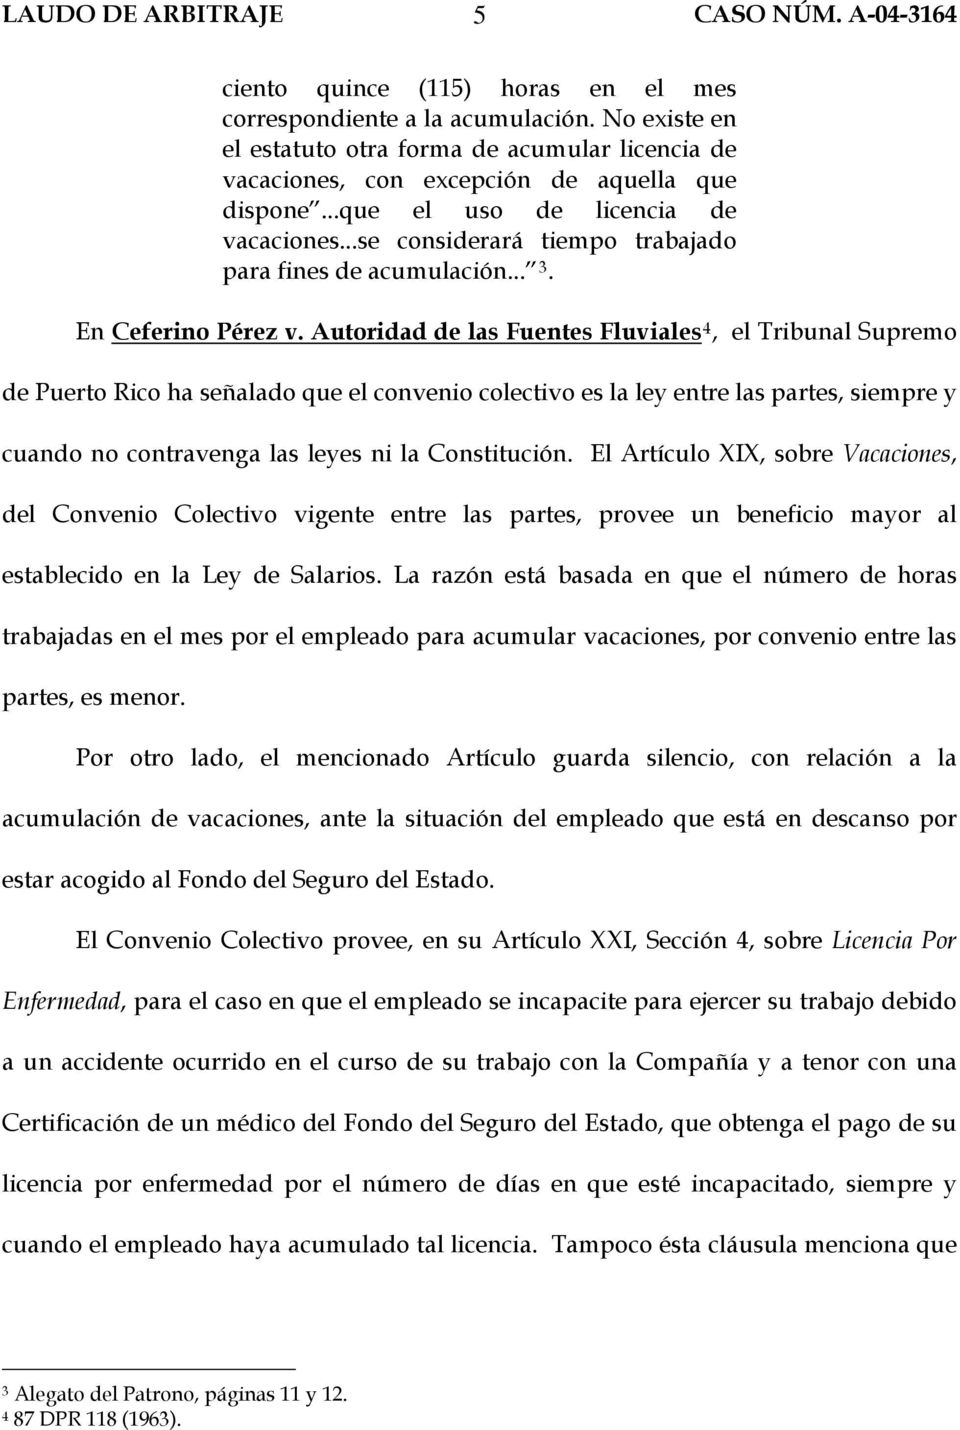 Autoridad de las Fuentes Fluviales 4, el Tribunal Supremo de Puerto Rico ha señalado que el convenio colectivo es la ley entre las partes, siempre y cuando no contravenga las leyes ni la Constitución.